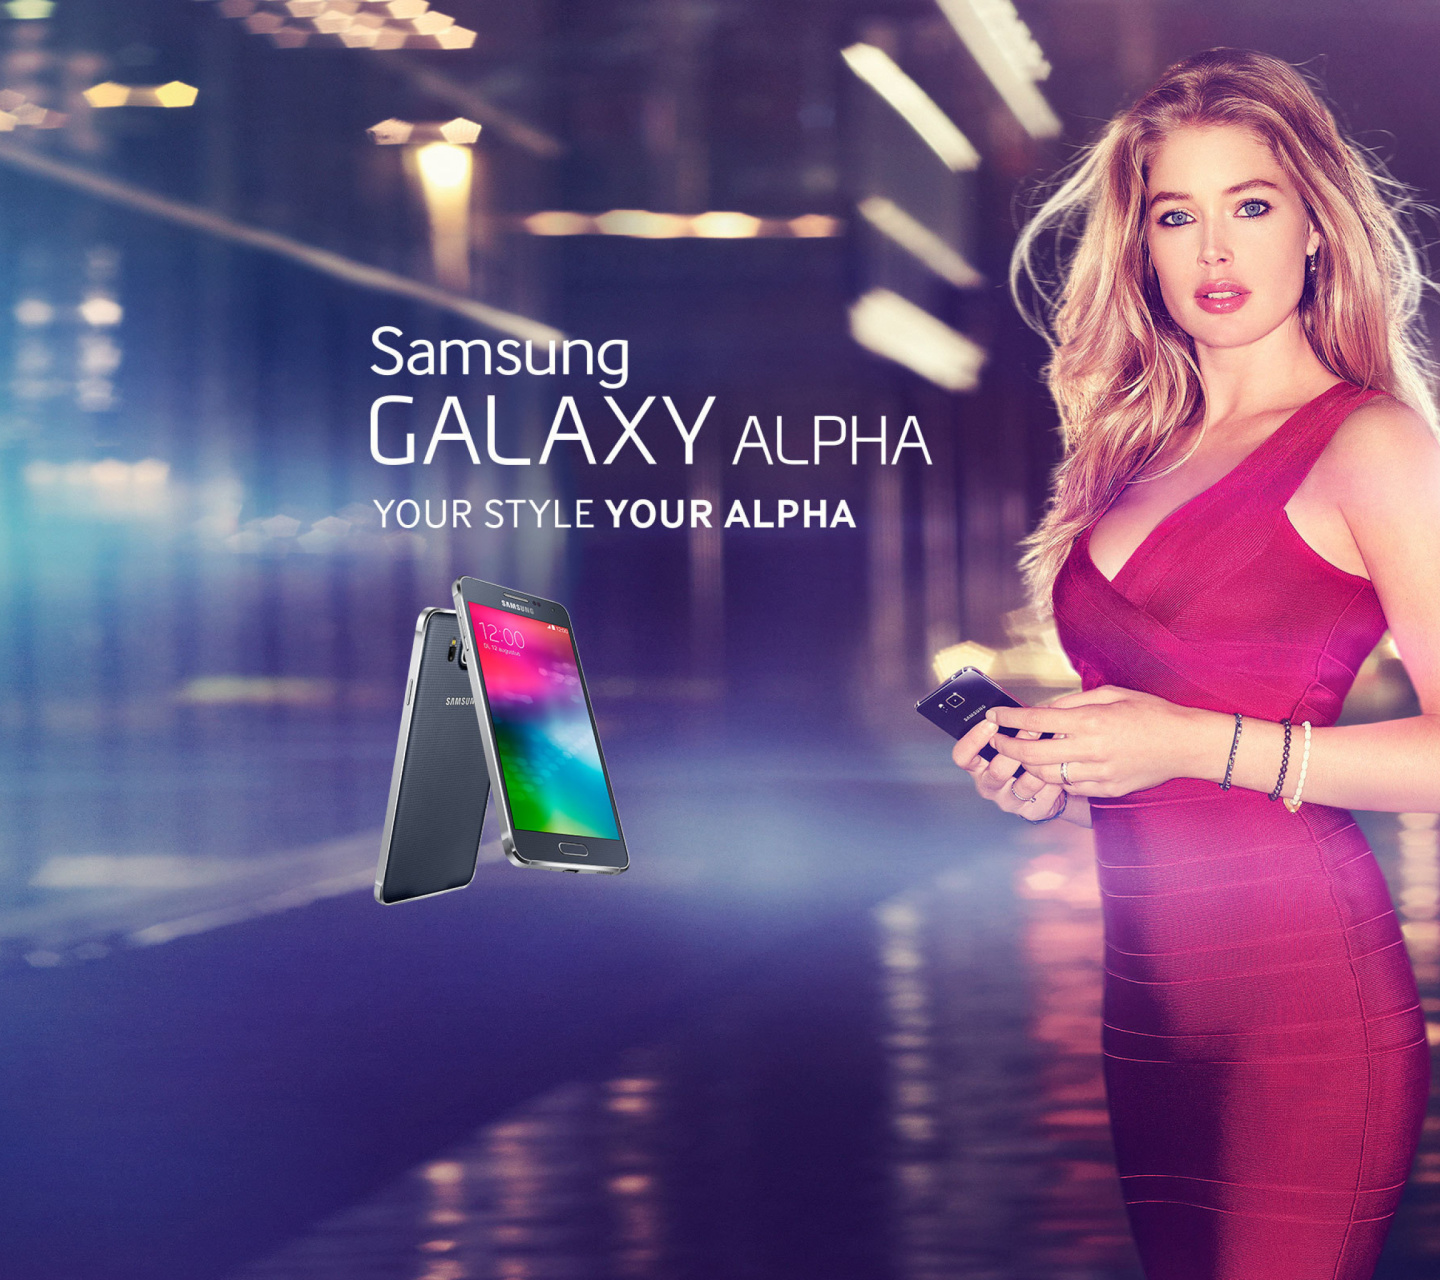 Samsung Galaxy Alpha Advertisement with Doutzen Kroes screenshot #1 1440x1280